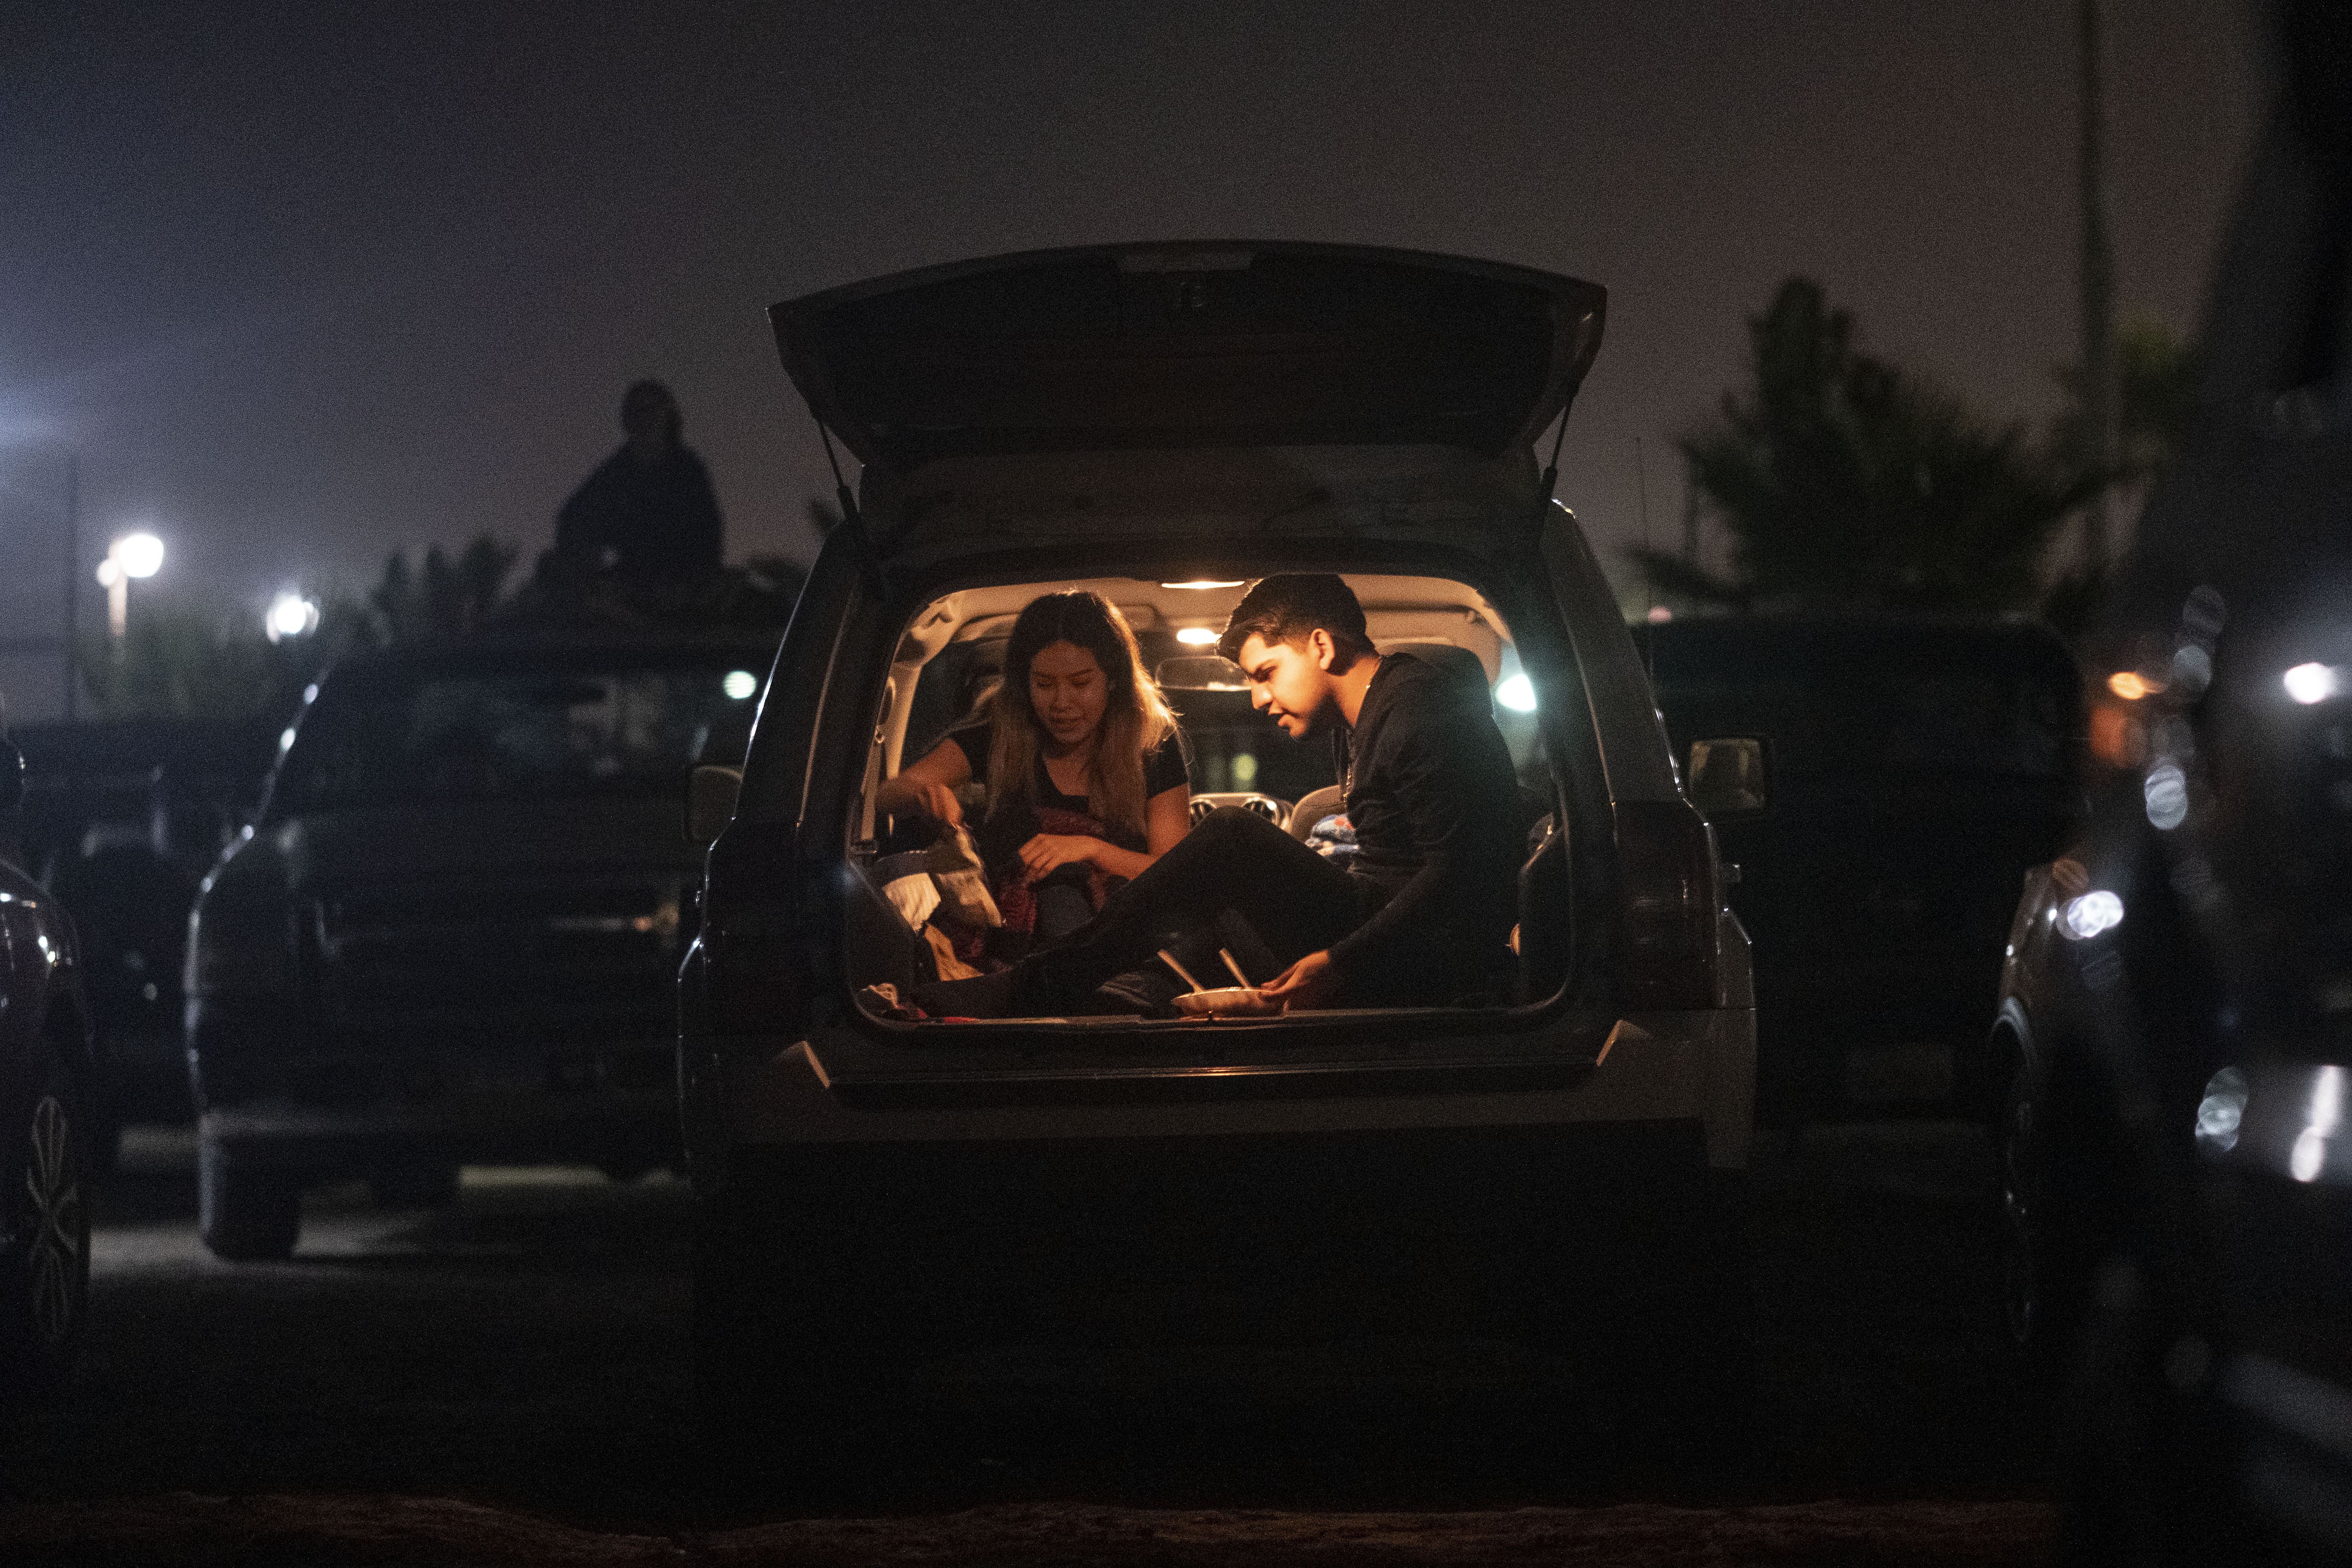 Una pareja come desde el carro mientras disfrutan una película en Playas de Rosarito, estado de Baja California, México, el 17 de julio de 2020, en medio de la nueva pandemia de coronavirus. (Foto de Guillermo Arias / AFP)